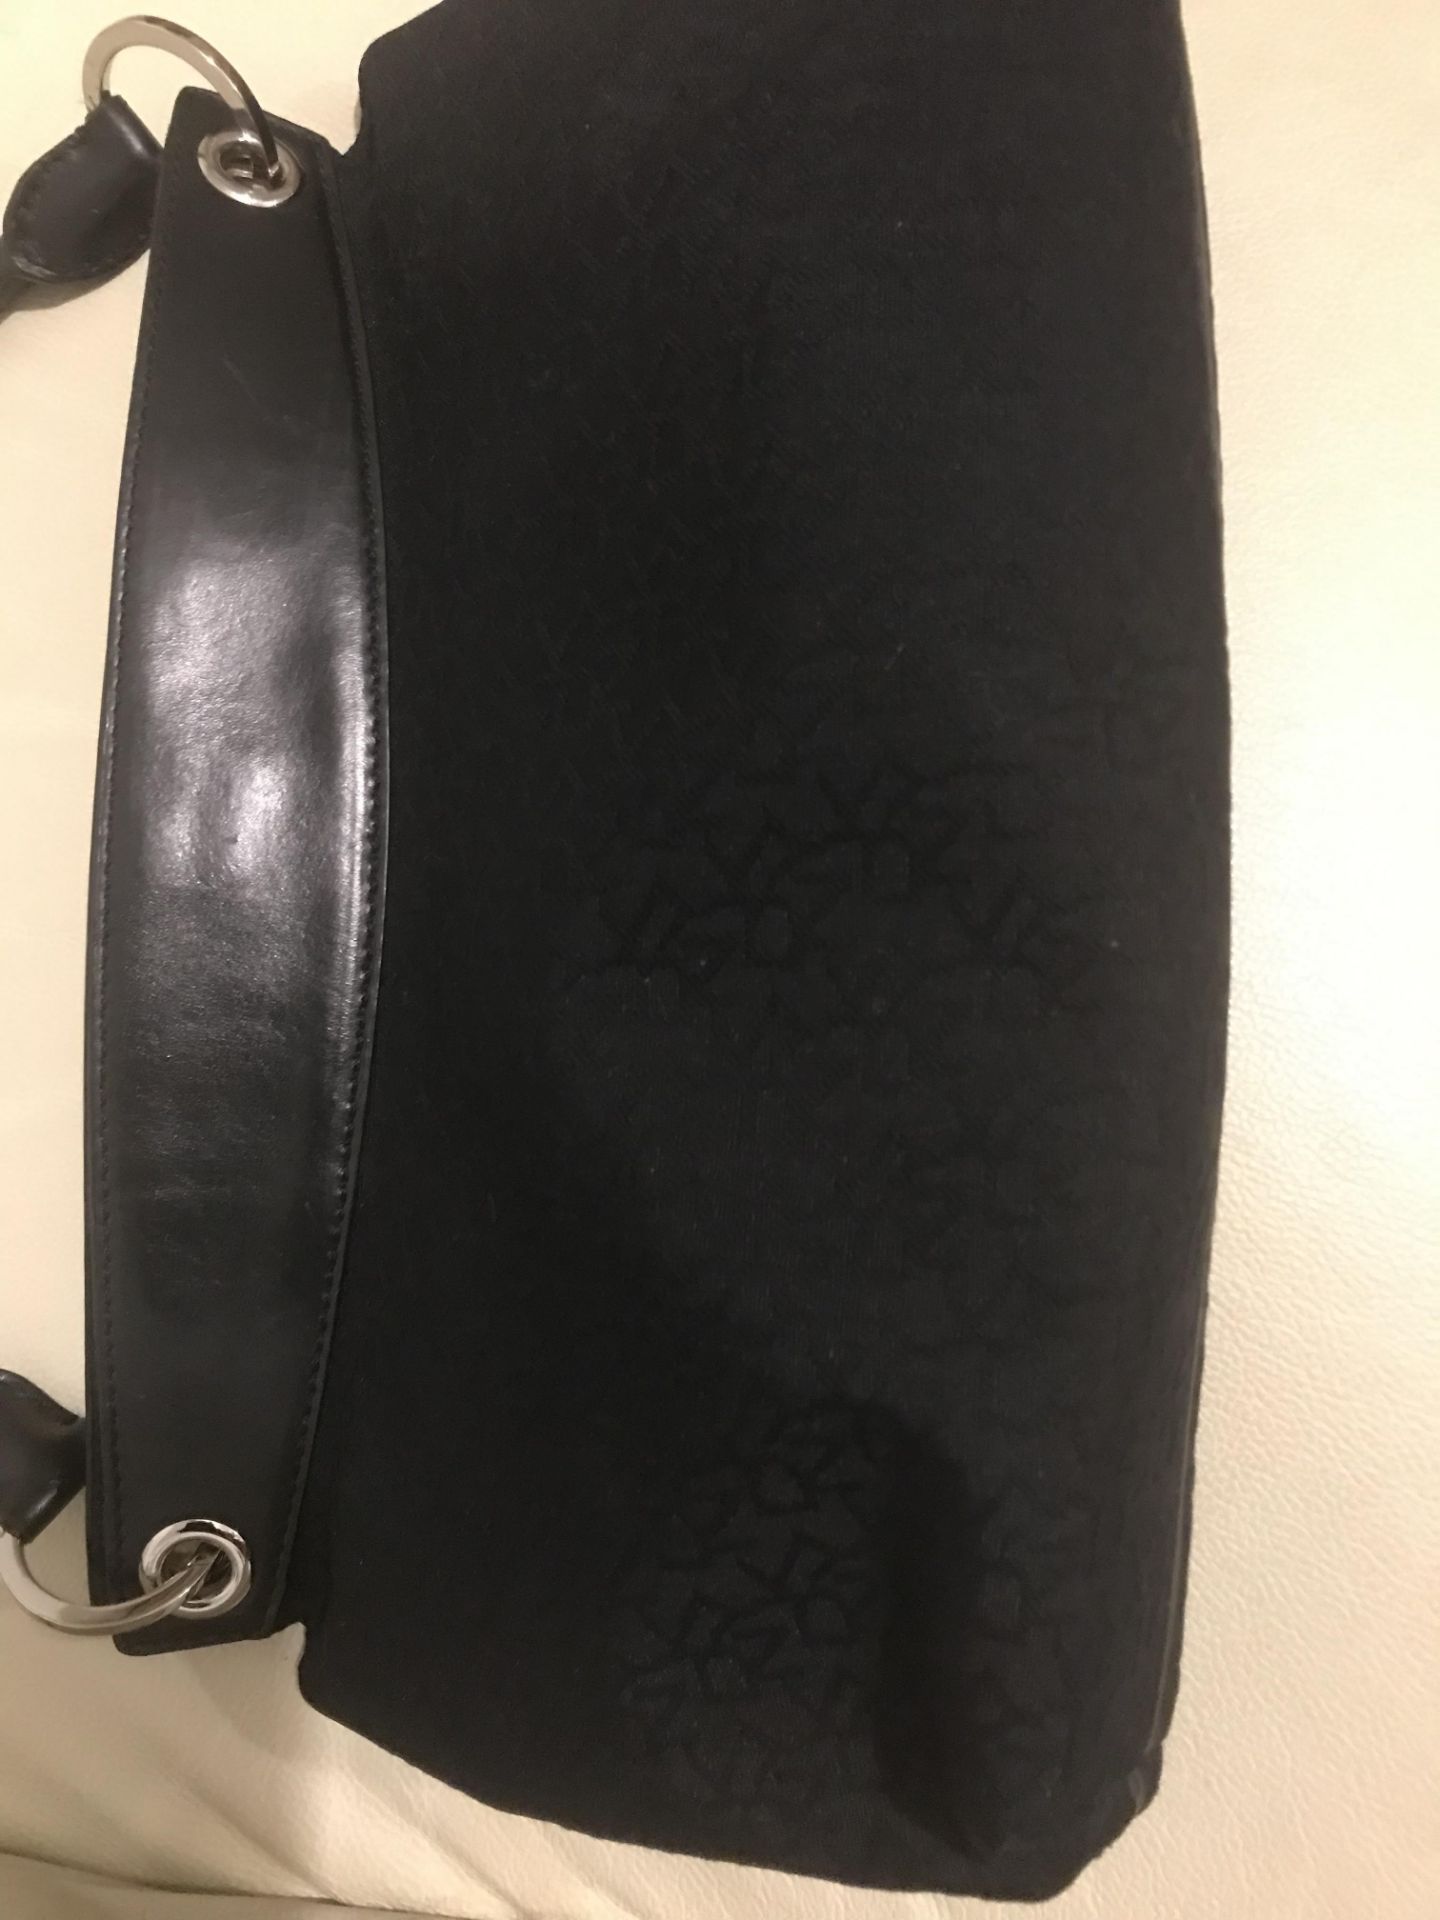 DKNY Logo Shoulder Handbag magnetic closure - Image 2 of 5